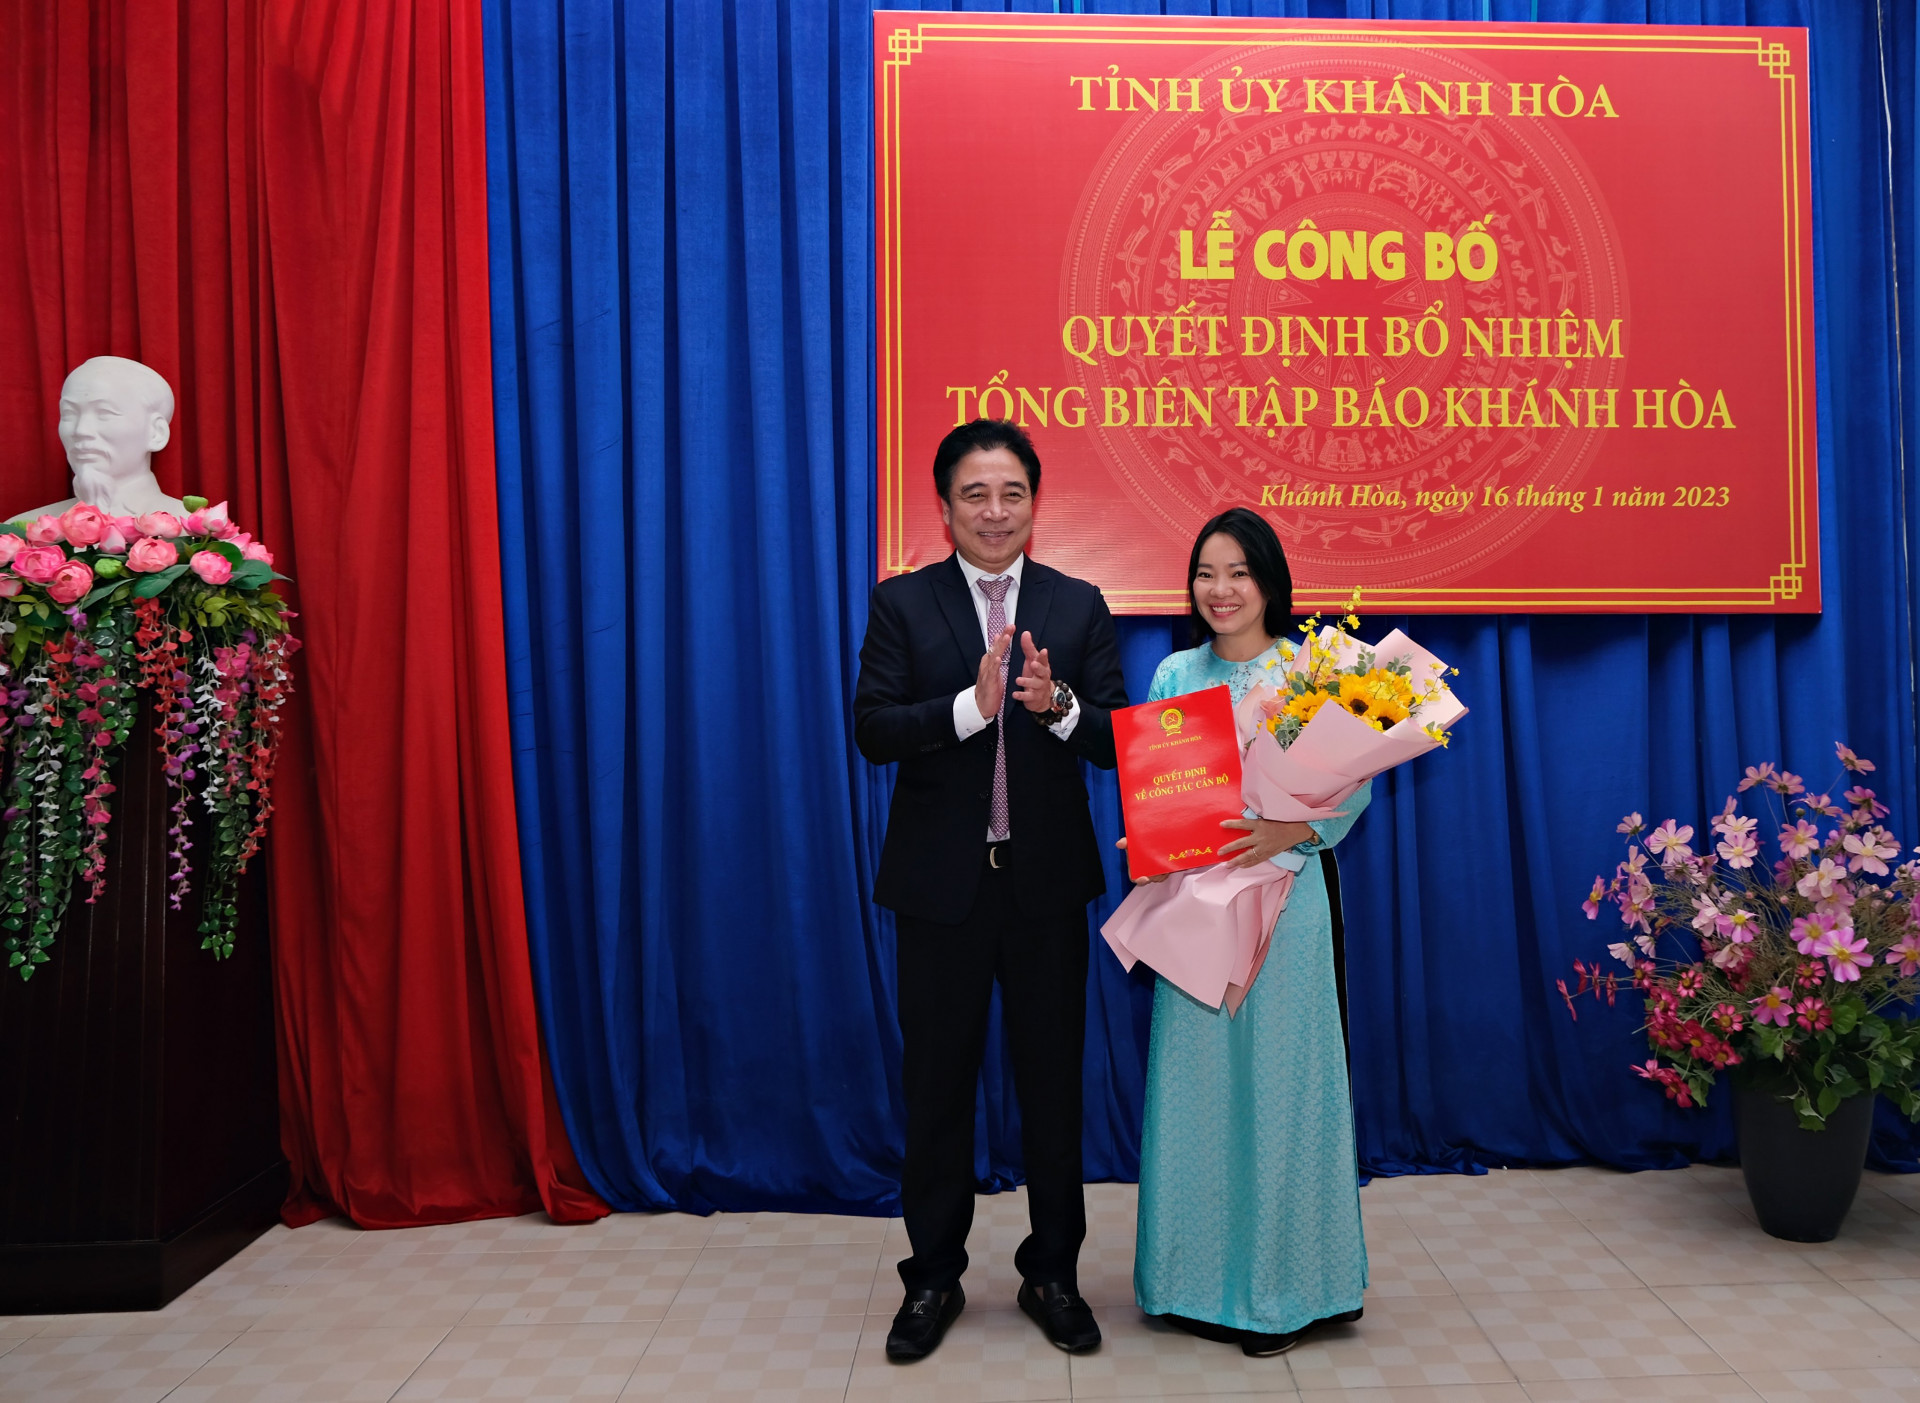 Ông Nguyễn Khắc Toàn trao quyết định bổ nhiệm Tổng Biên tập cho bà Thái Thị Lệ Hằng. (Ảnh: Thành An)